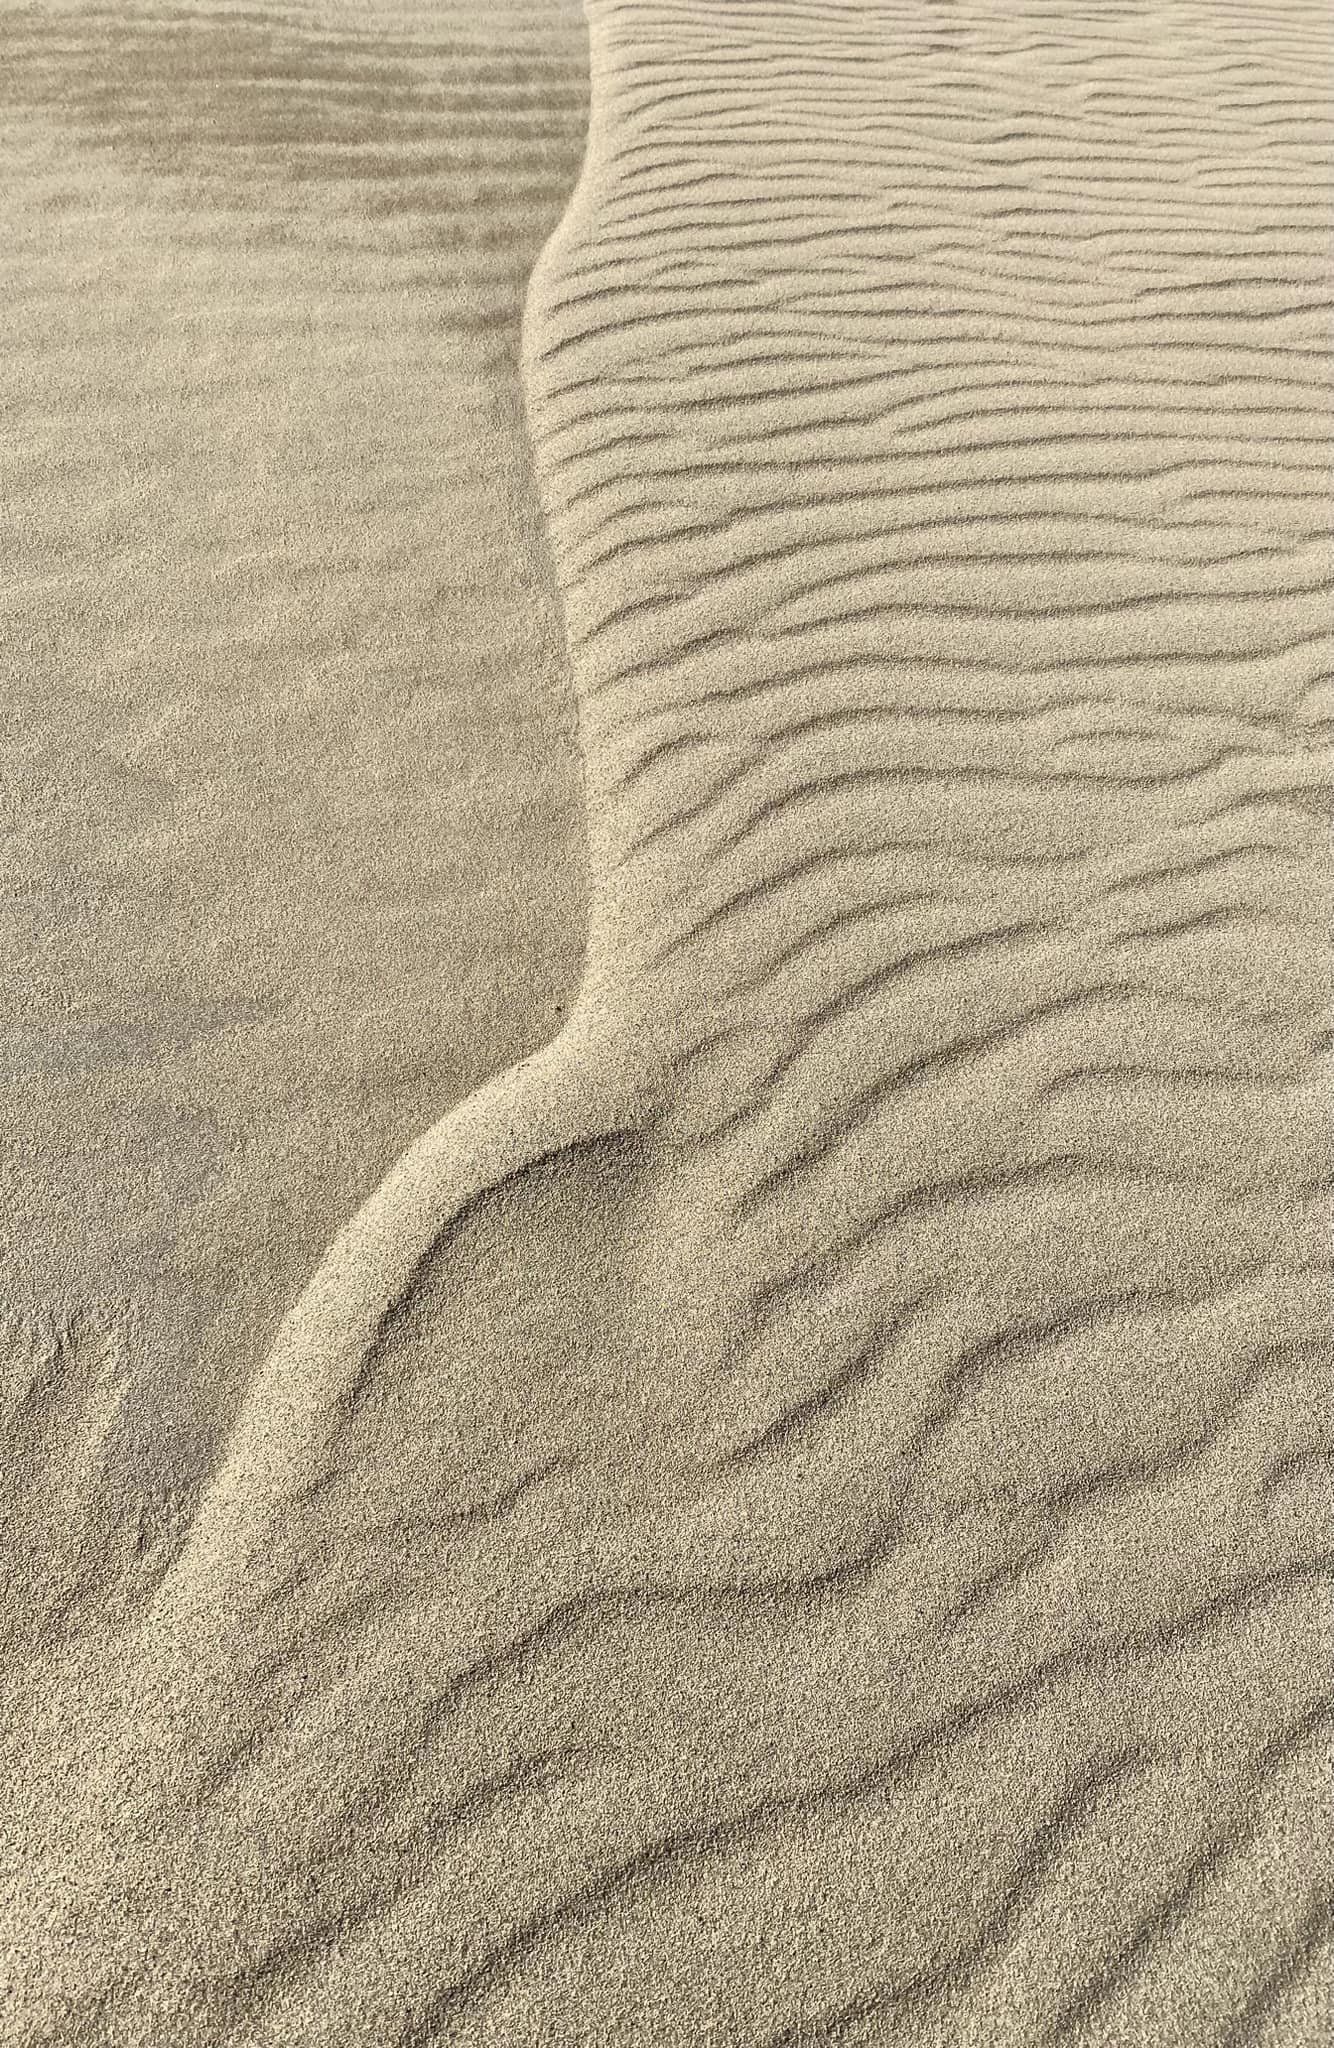 朝の砂丘には、風紋が美しい。